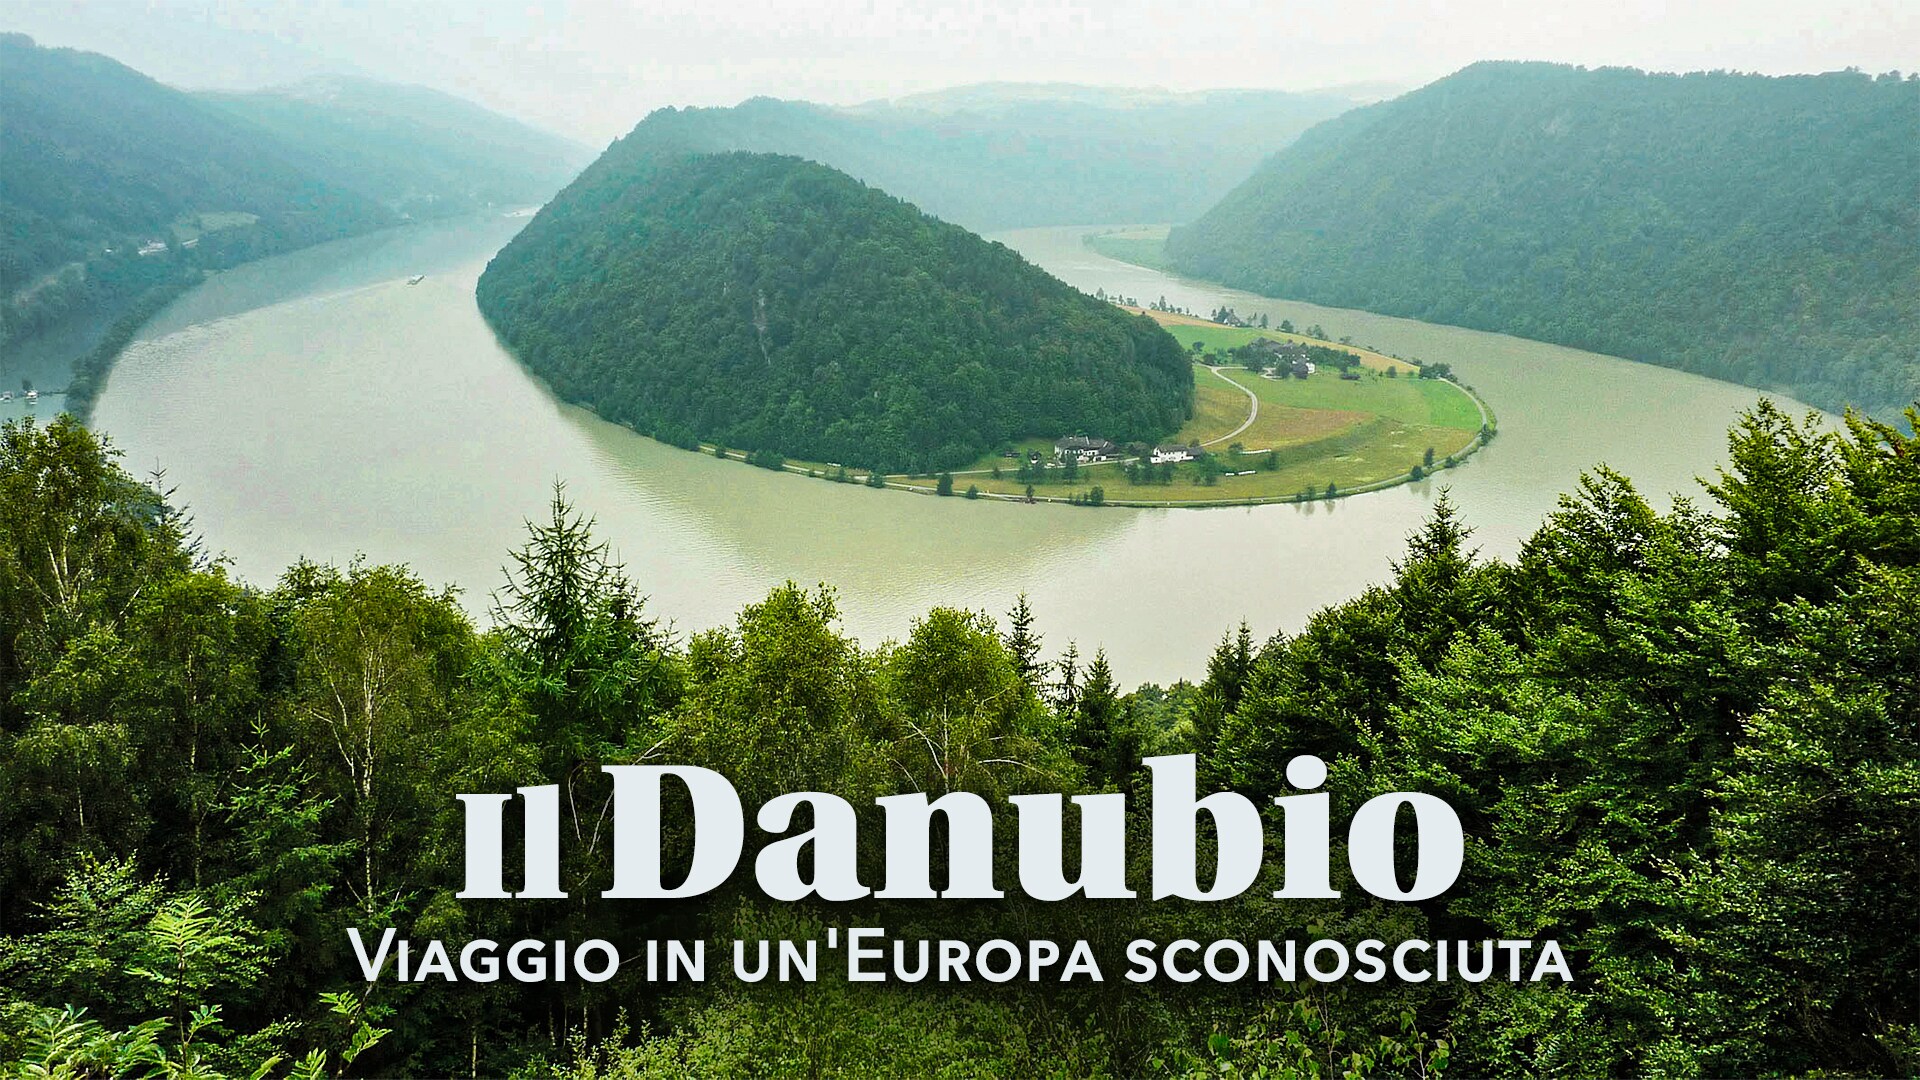 Il Danubio - Viaggio in un'Europa sconosciuta